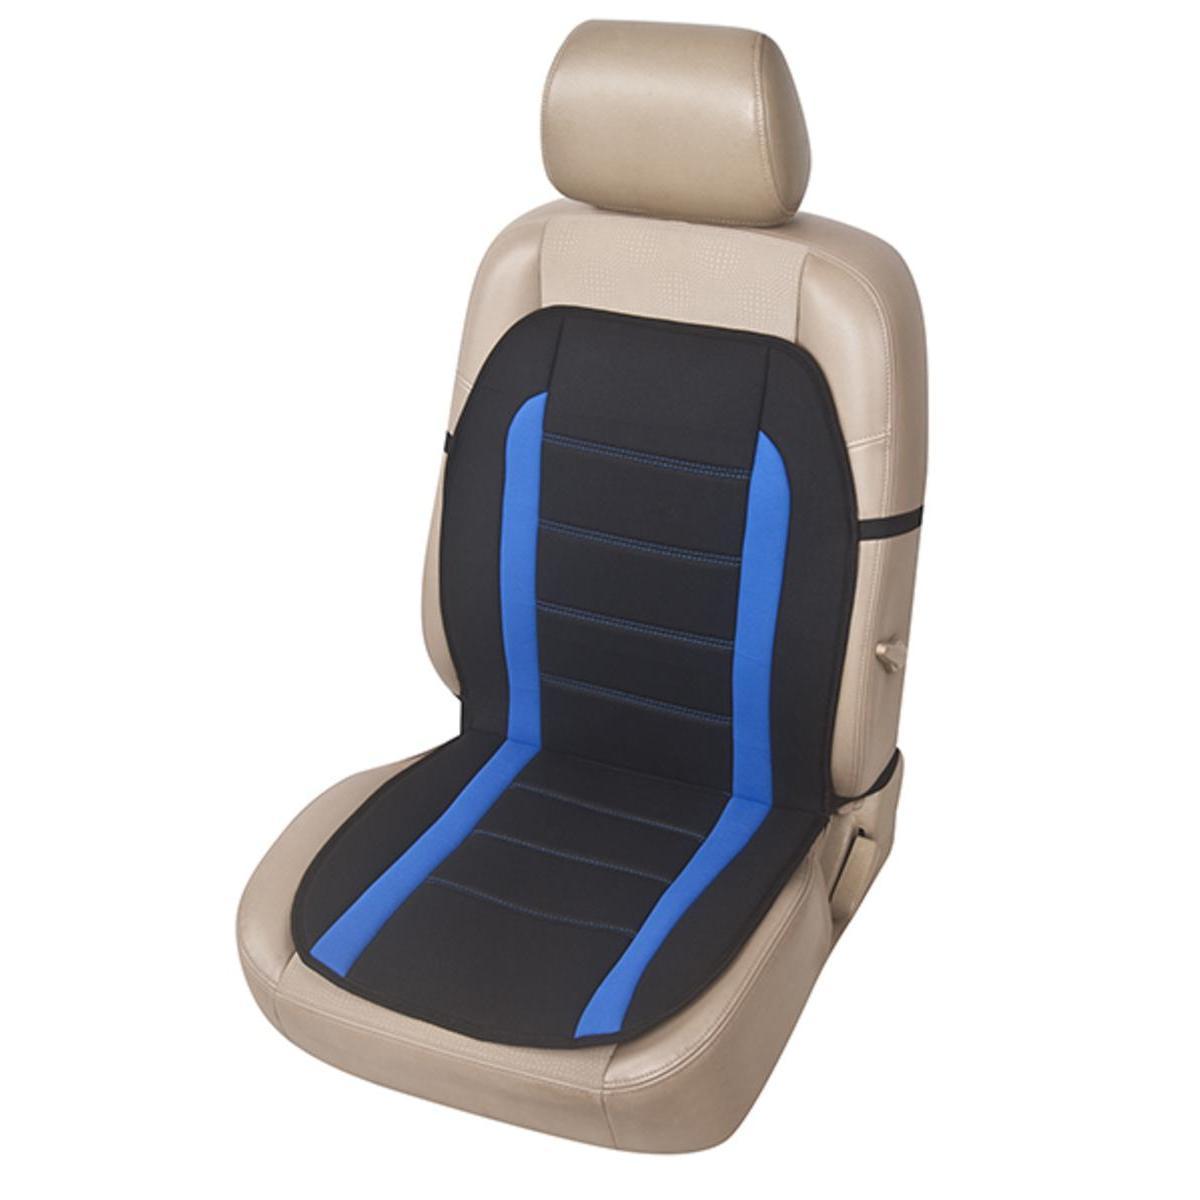 Couvre-siège design - L 56 x P 3.5 x l 45 cm - Différents coloris - Noir, bleu